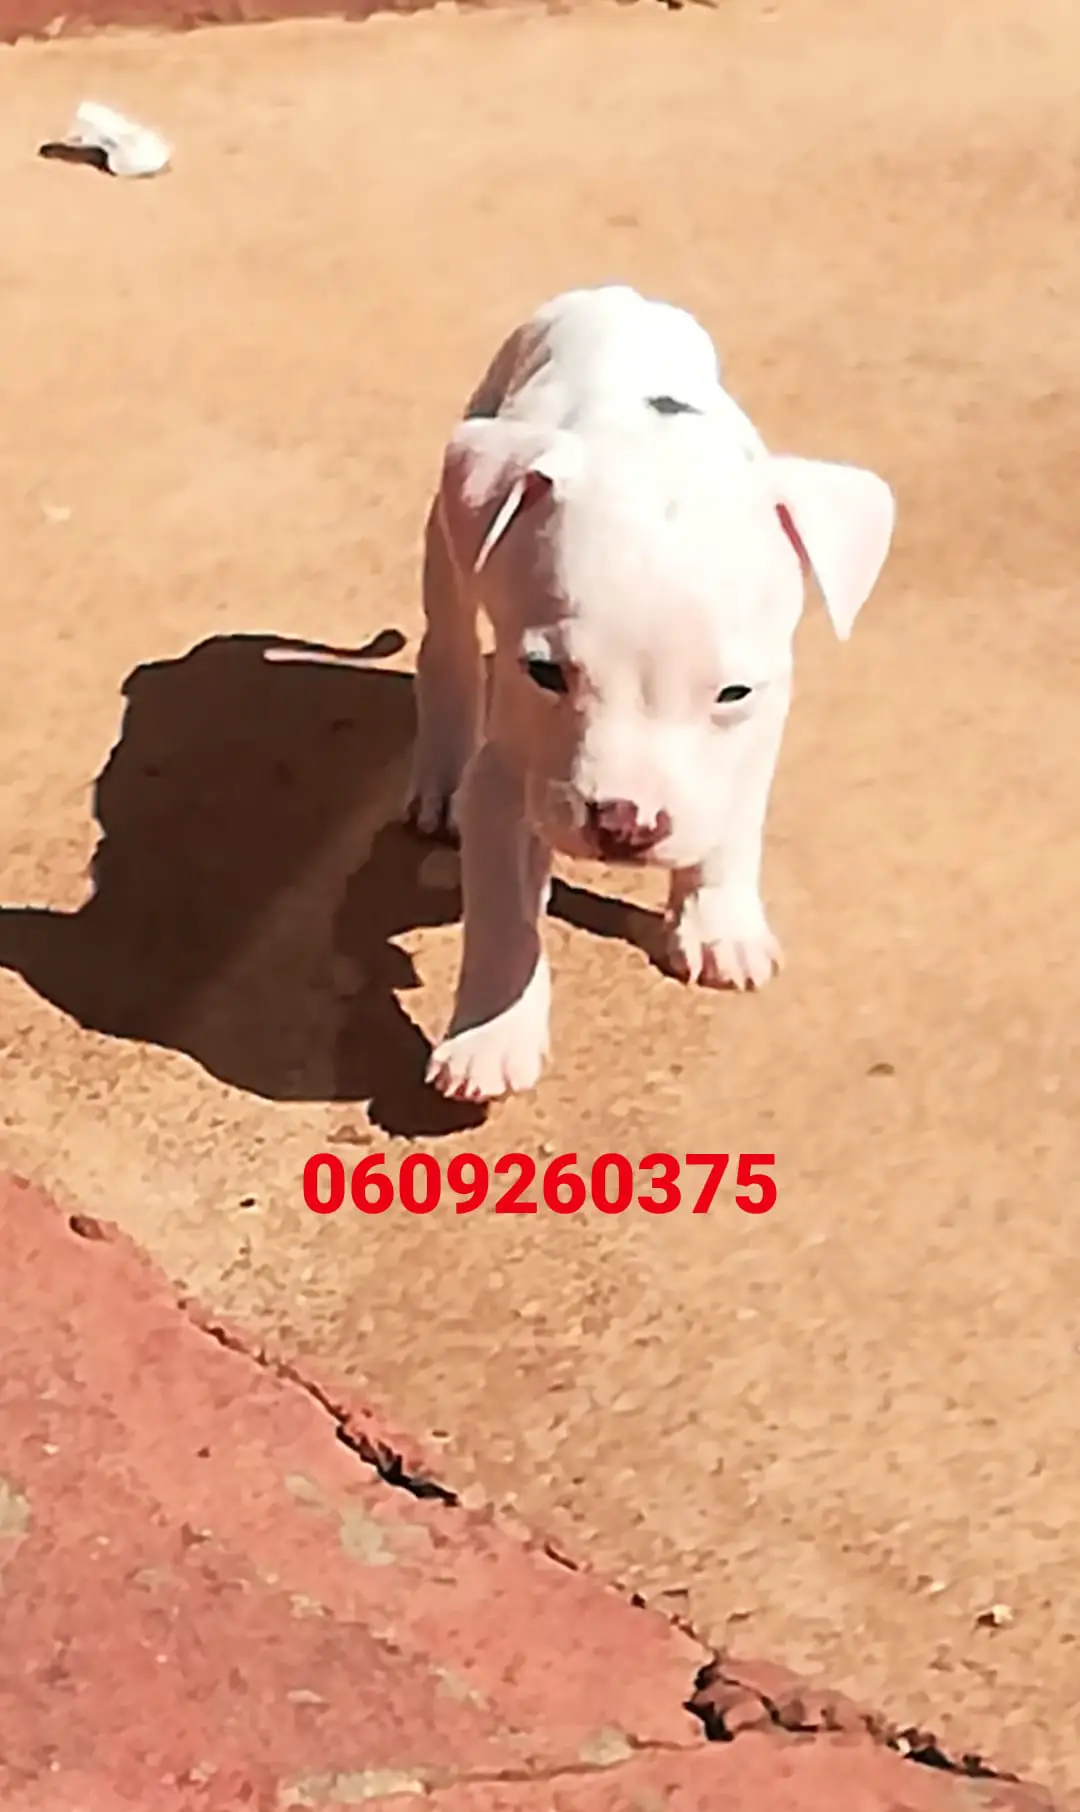 Pitbull Puppies in Pretoria (15/04/2021)